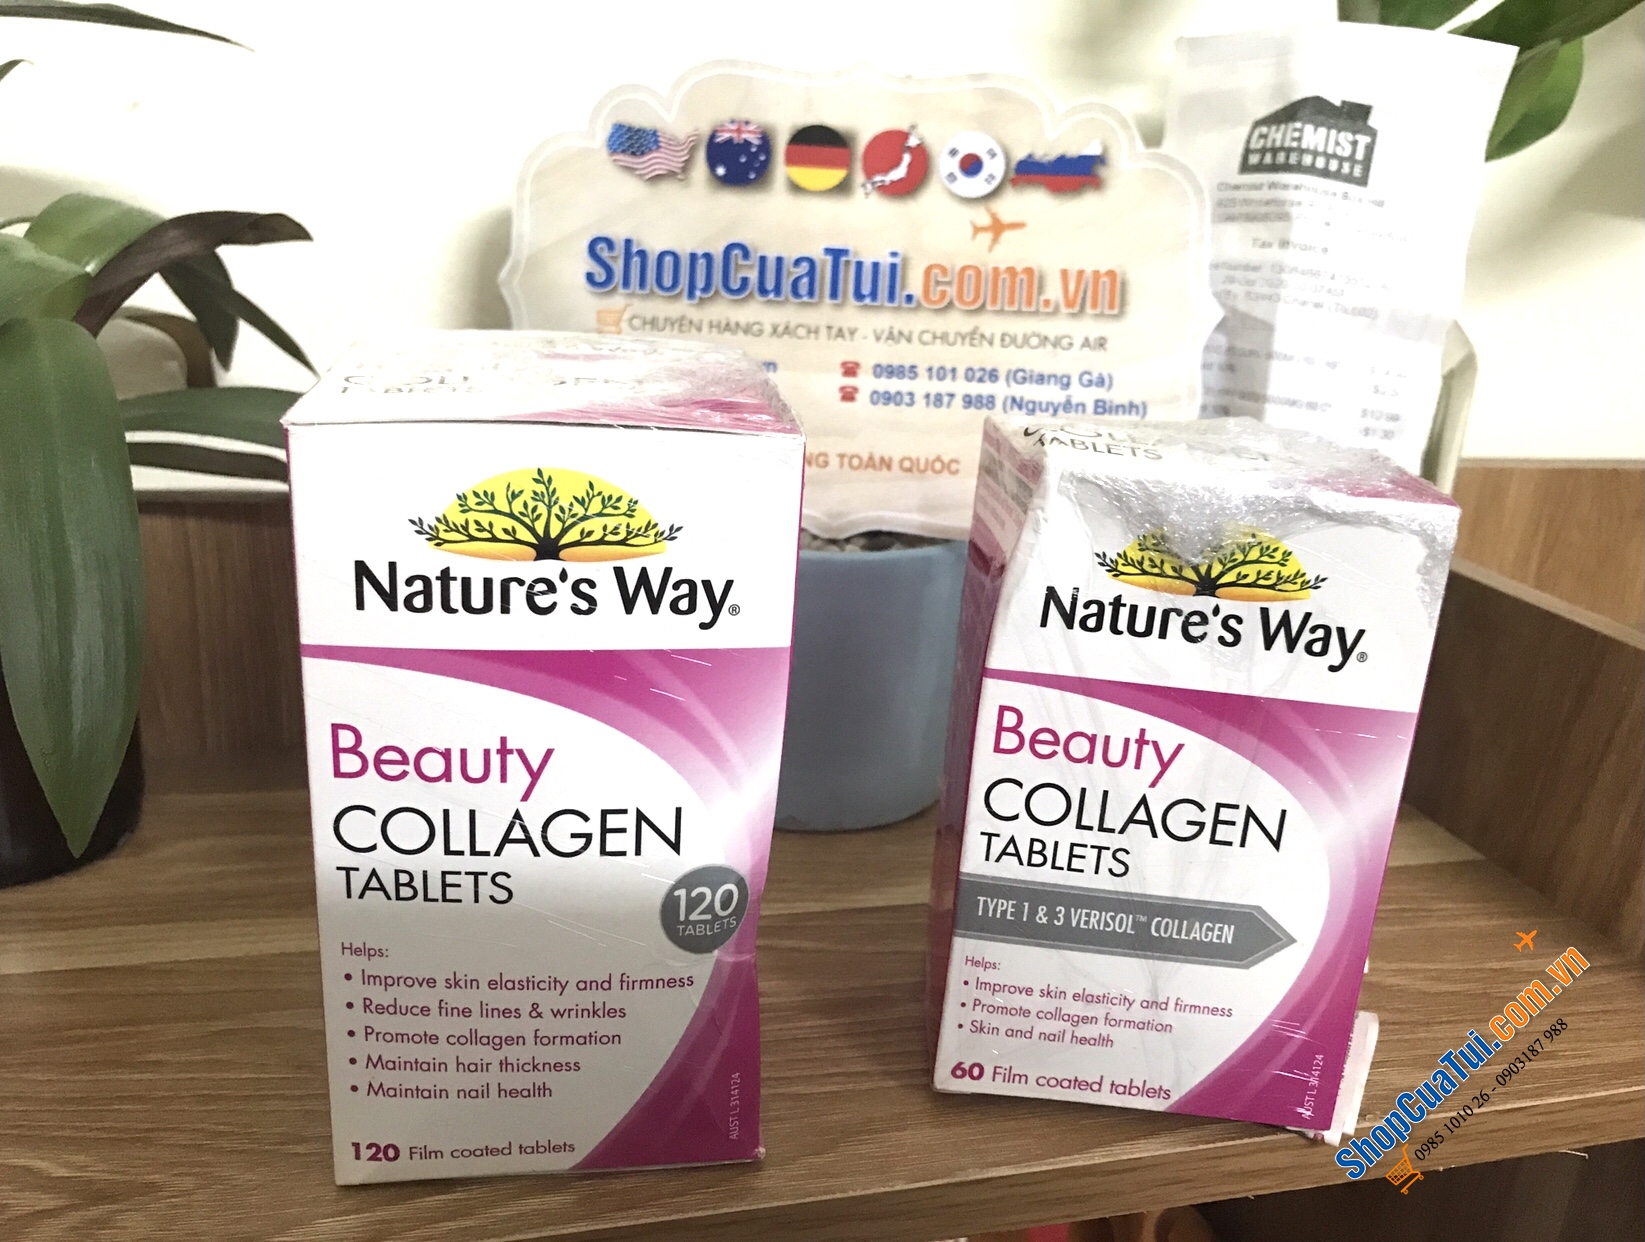 VIÊN UỐNG COLLAGEN LÀM ĐẸP DA, MÓNG, TÓC - NATURE WAY BEAUTY COLLAGEN 120 VIÊN - Nature Way Beauty Collagen 120 Tablets